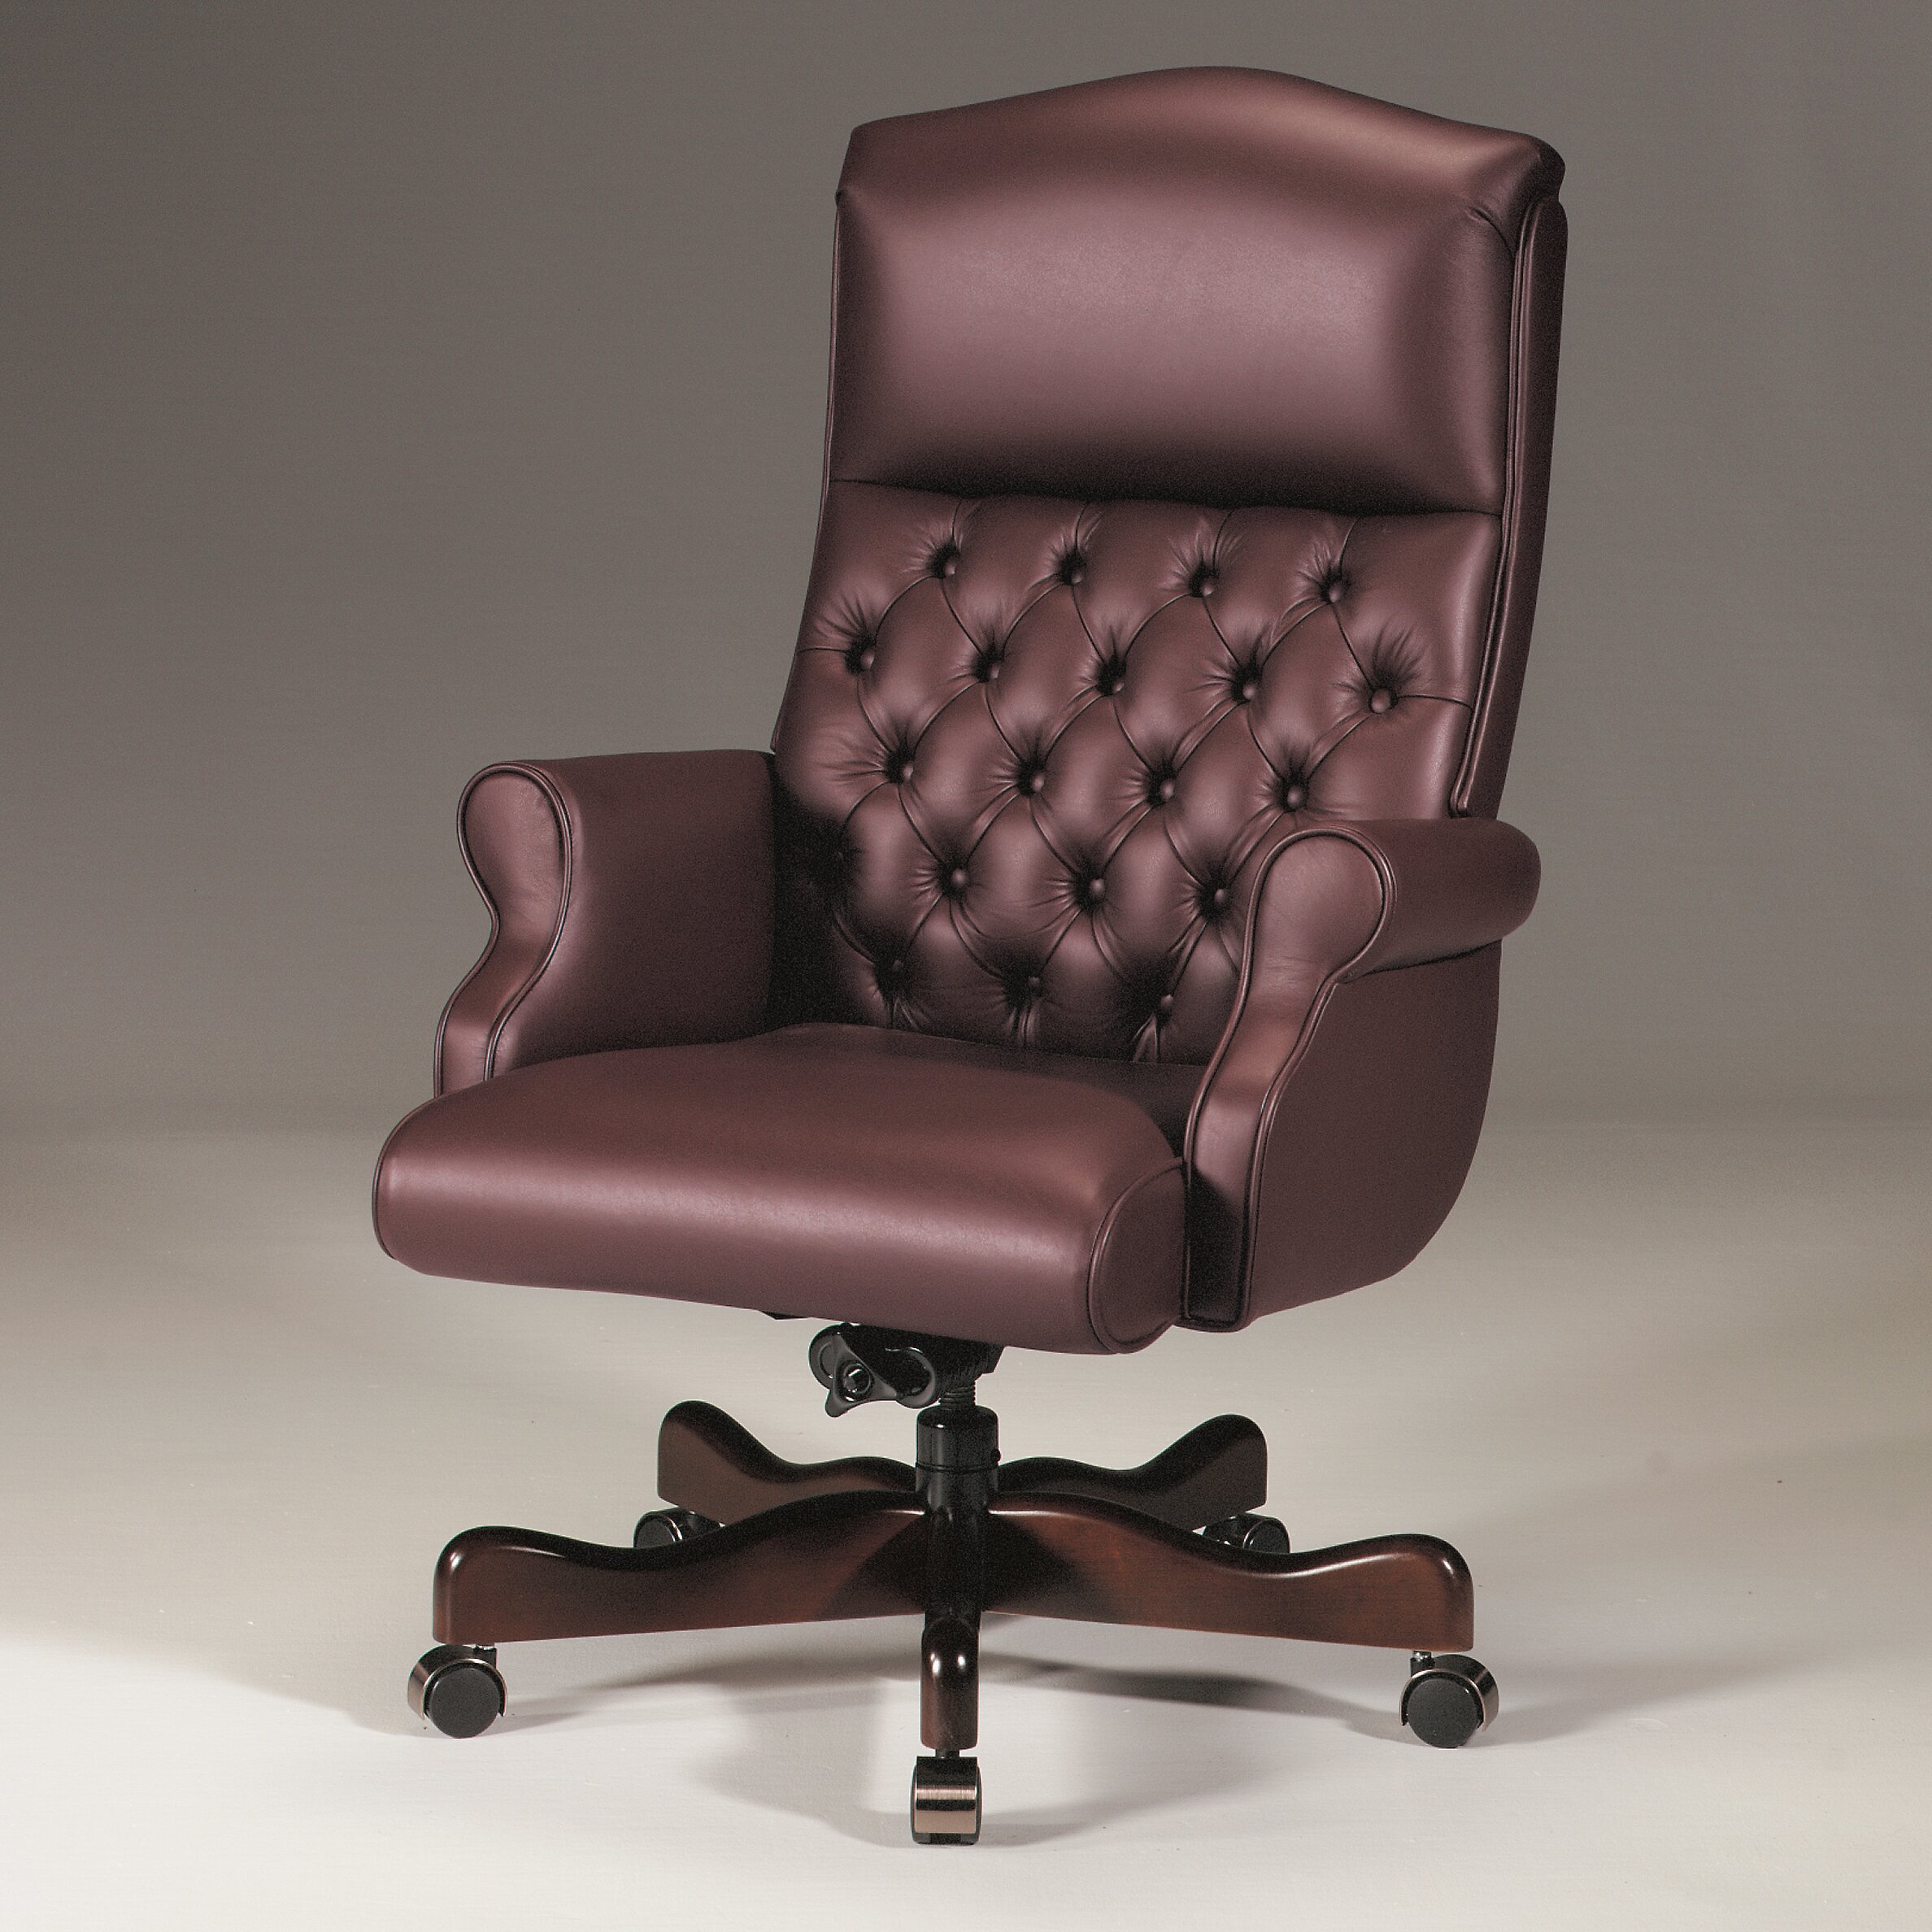 https://assets.wfcdn.com/im/12861337/compr-r85/3201/32014122/executive-chair-with-headrest.jpg